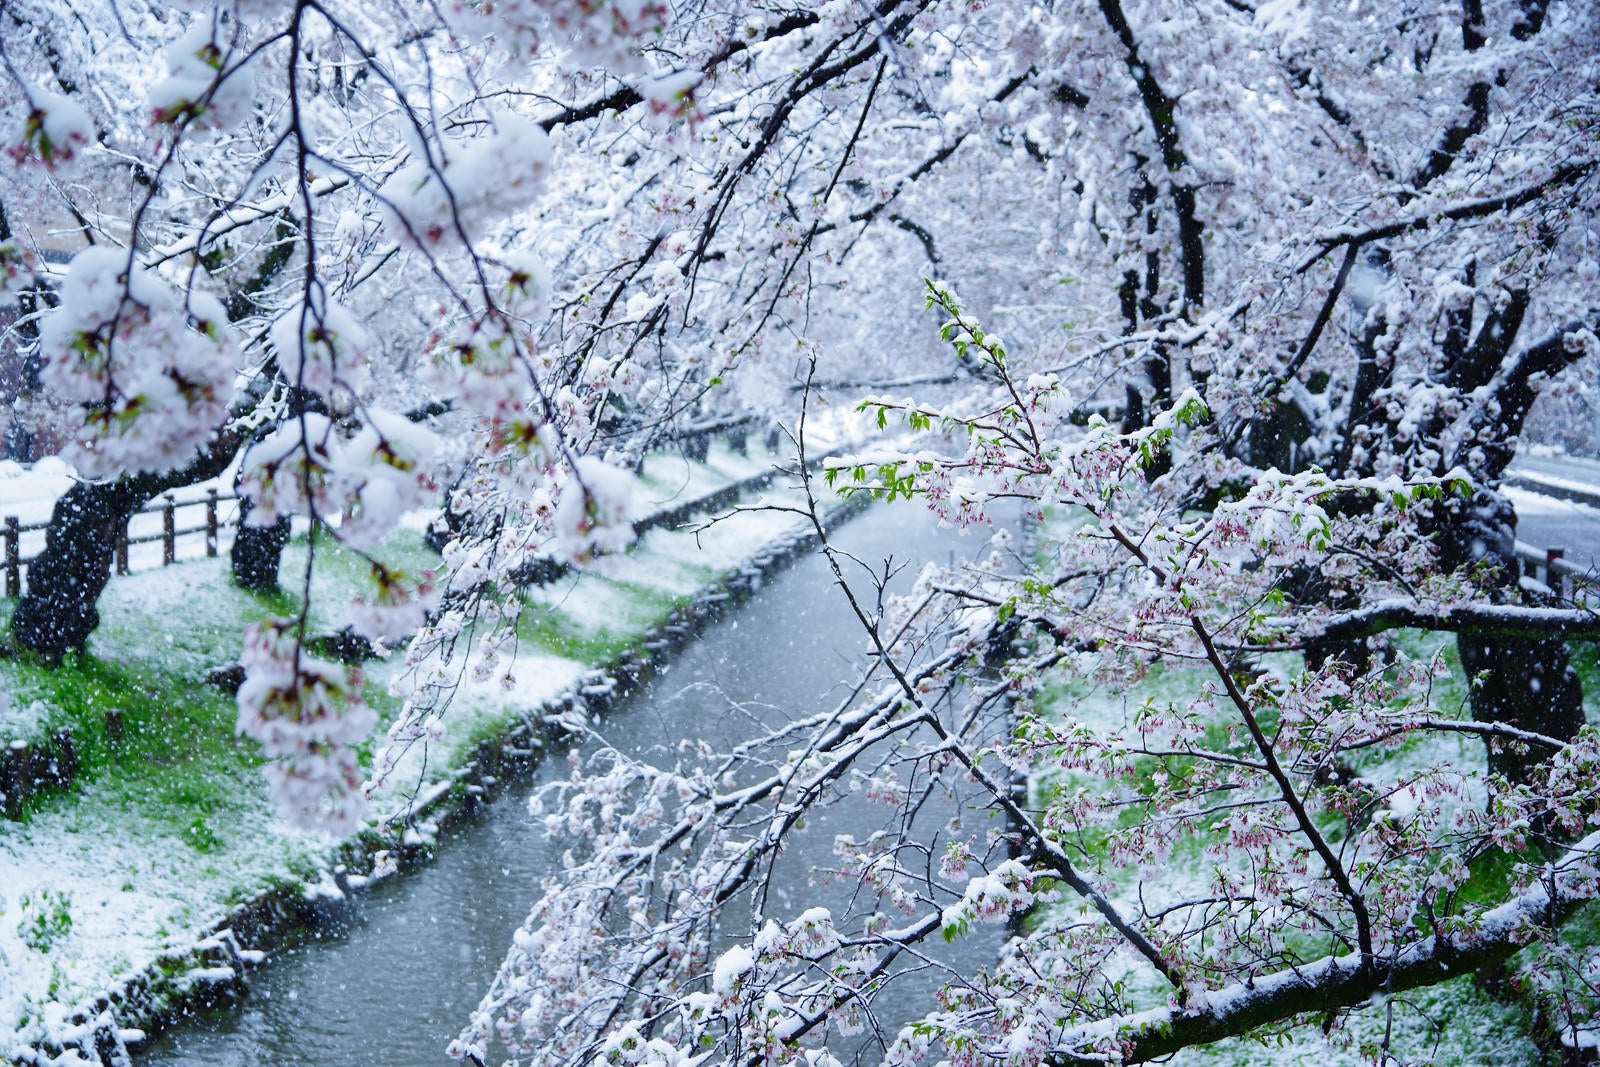 「開花する桜と積雪のコラボ」の写真